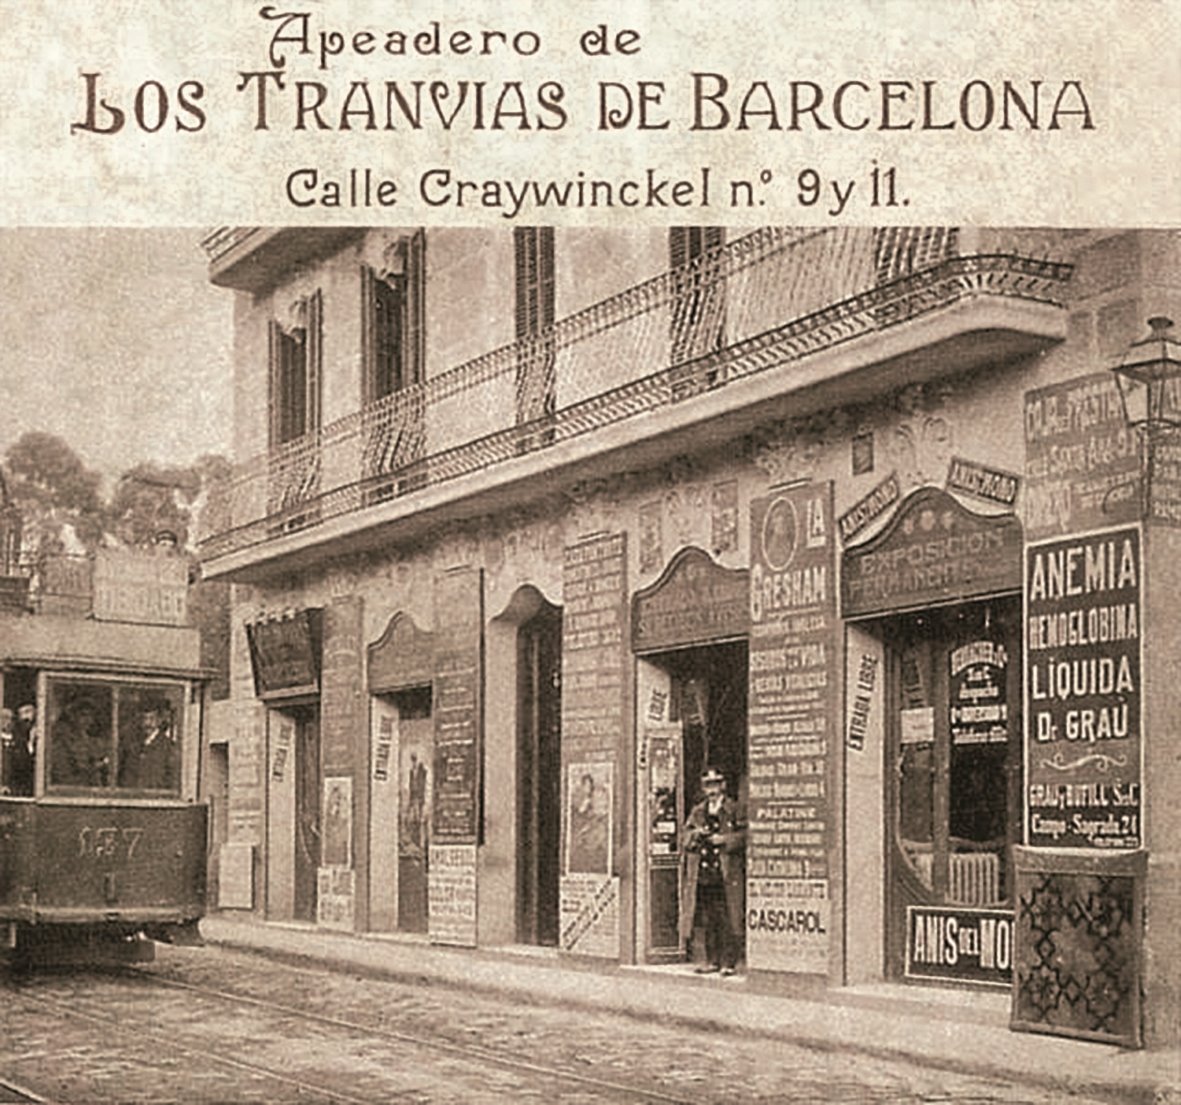 Barcelona: Enric H. March ofrece una anatomía histórica de la ciudad